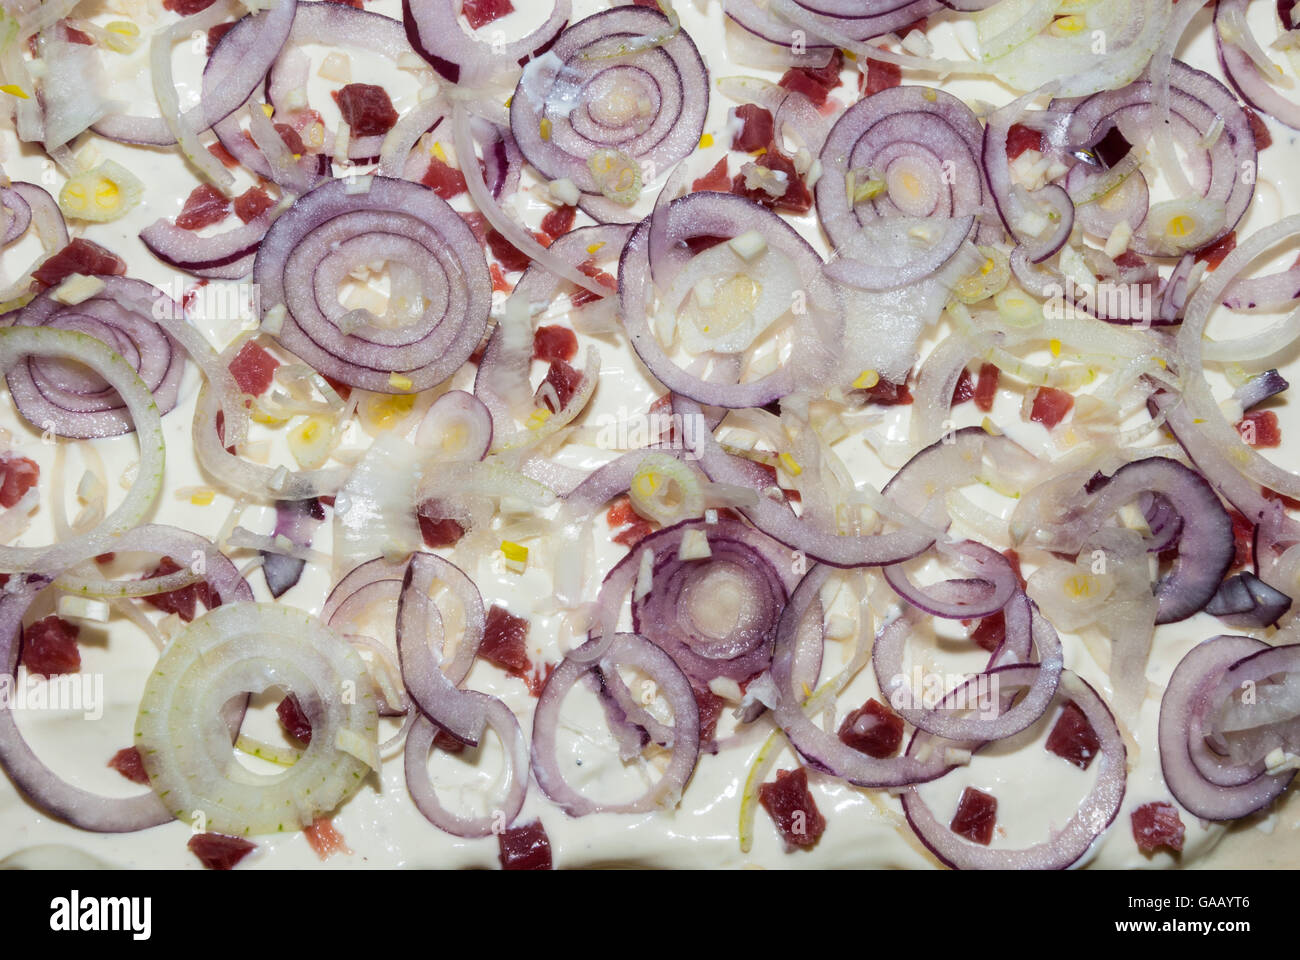 La preparazione di un piatto alsaziano, tarte flambée con panna acida, prosciutto, lardons e cipolle rosse Foto Stock